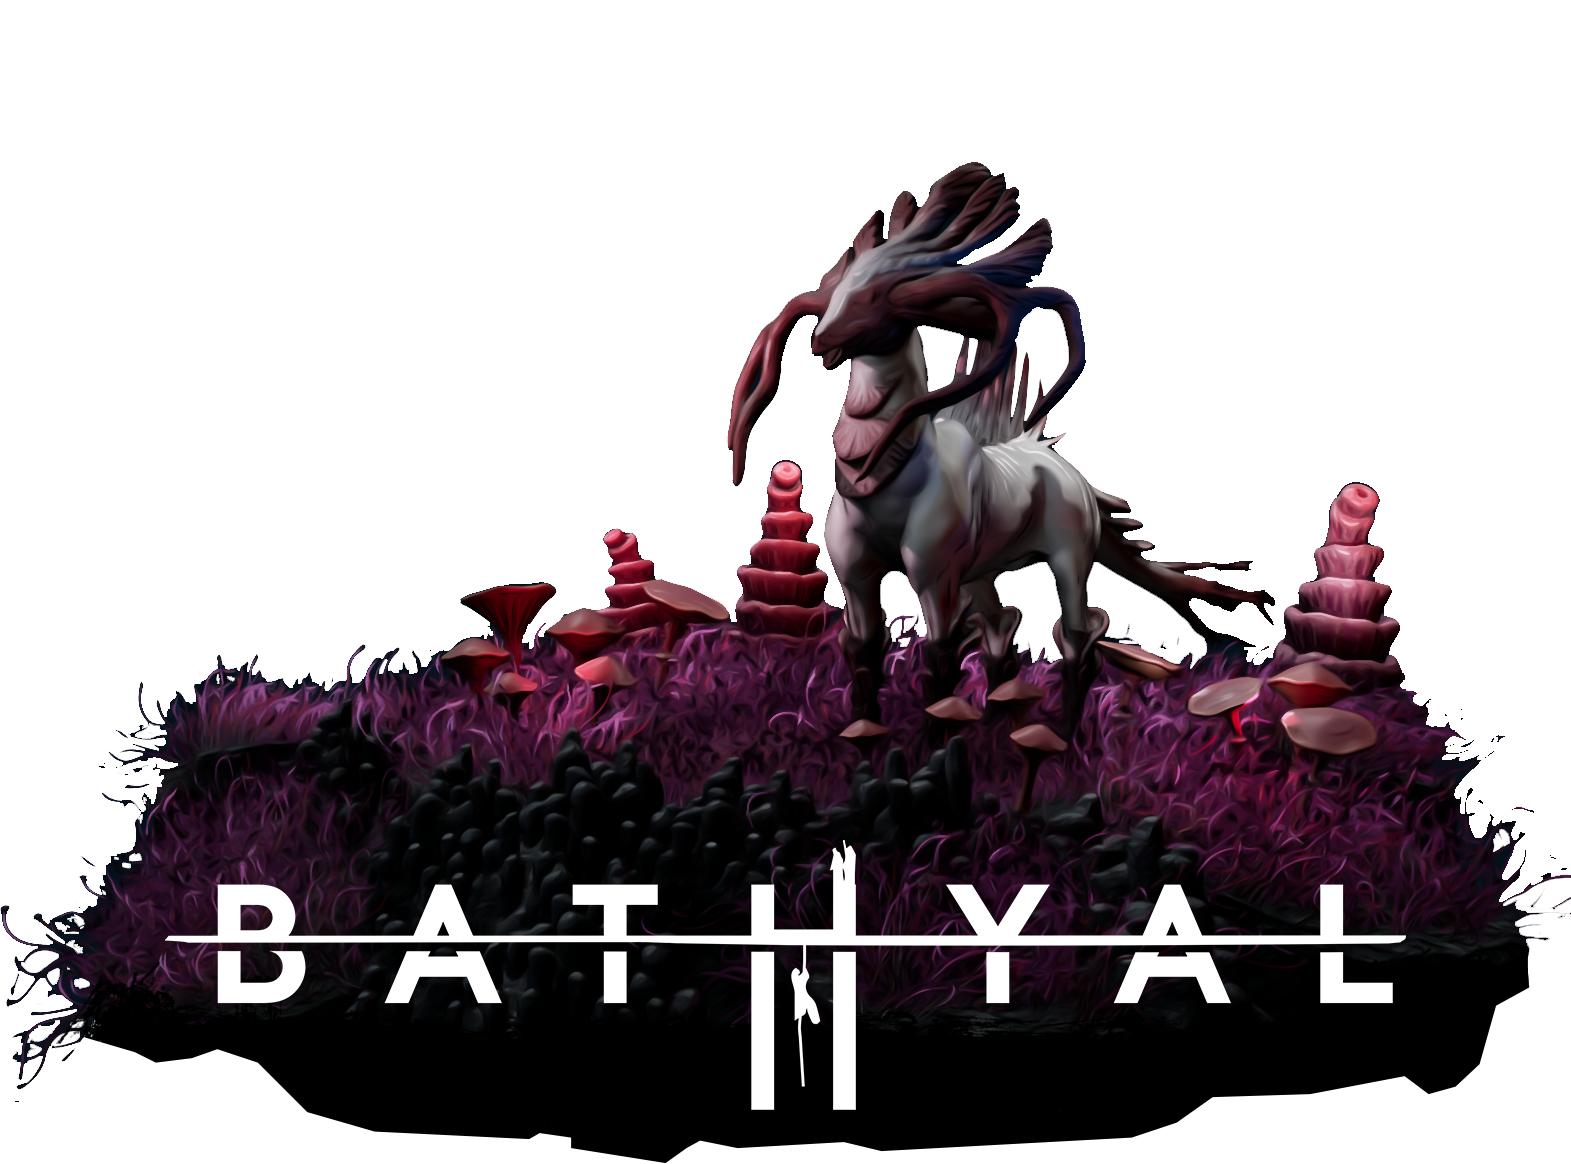 Bathyal